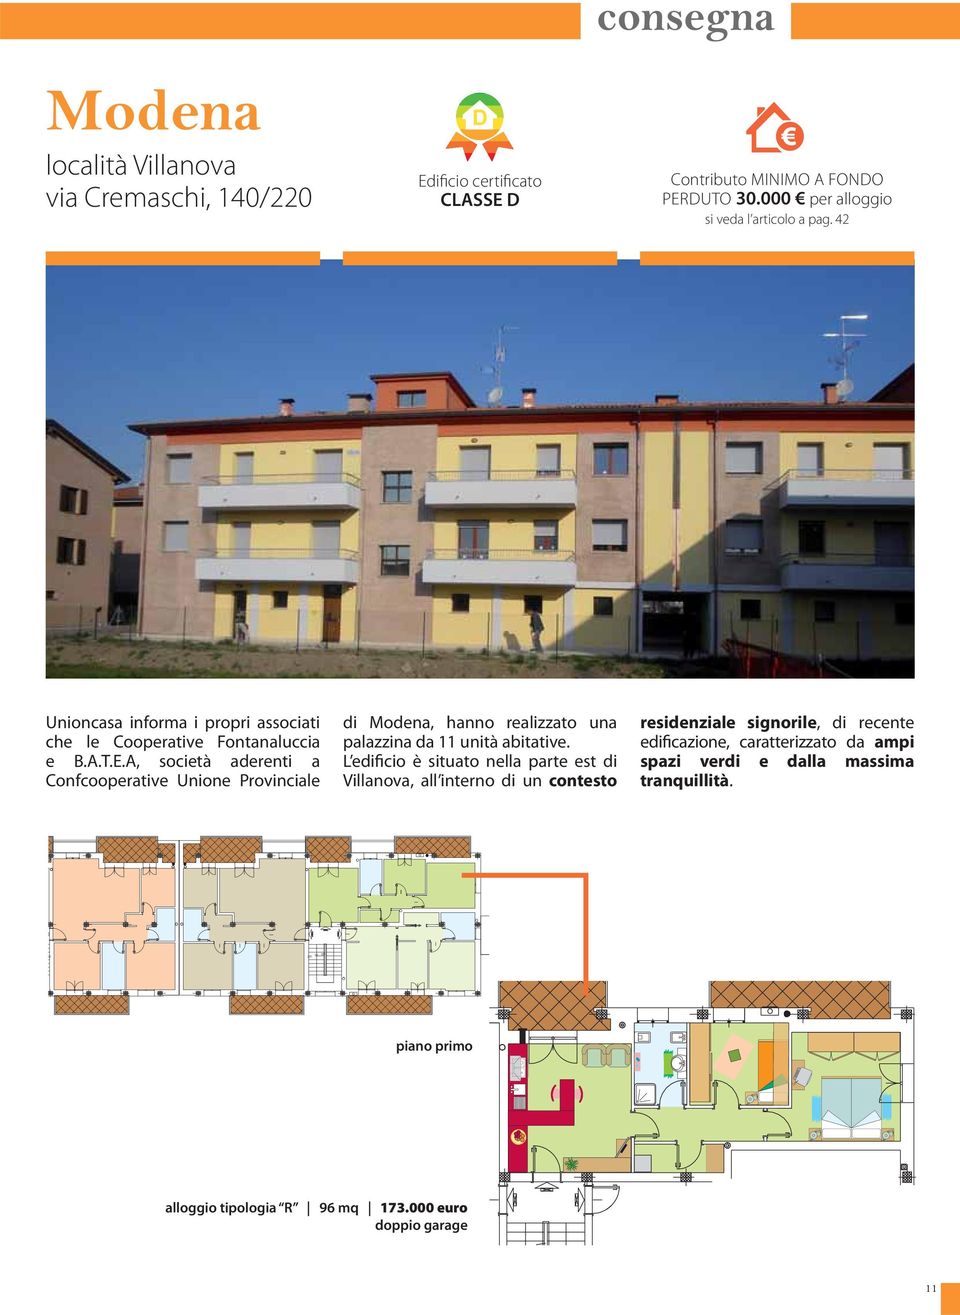 A, società aderenti a Confcooperative Unione Provinciale di Modena, hanno realizzato una palazzina da 11 unità abitative.